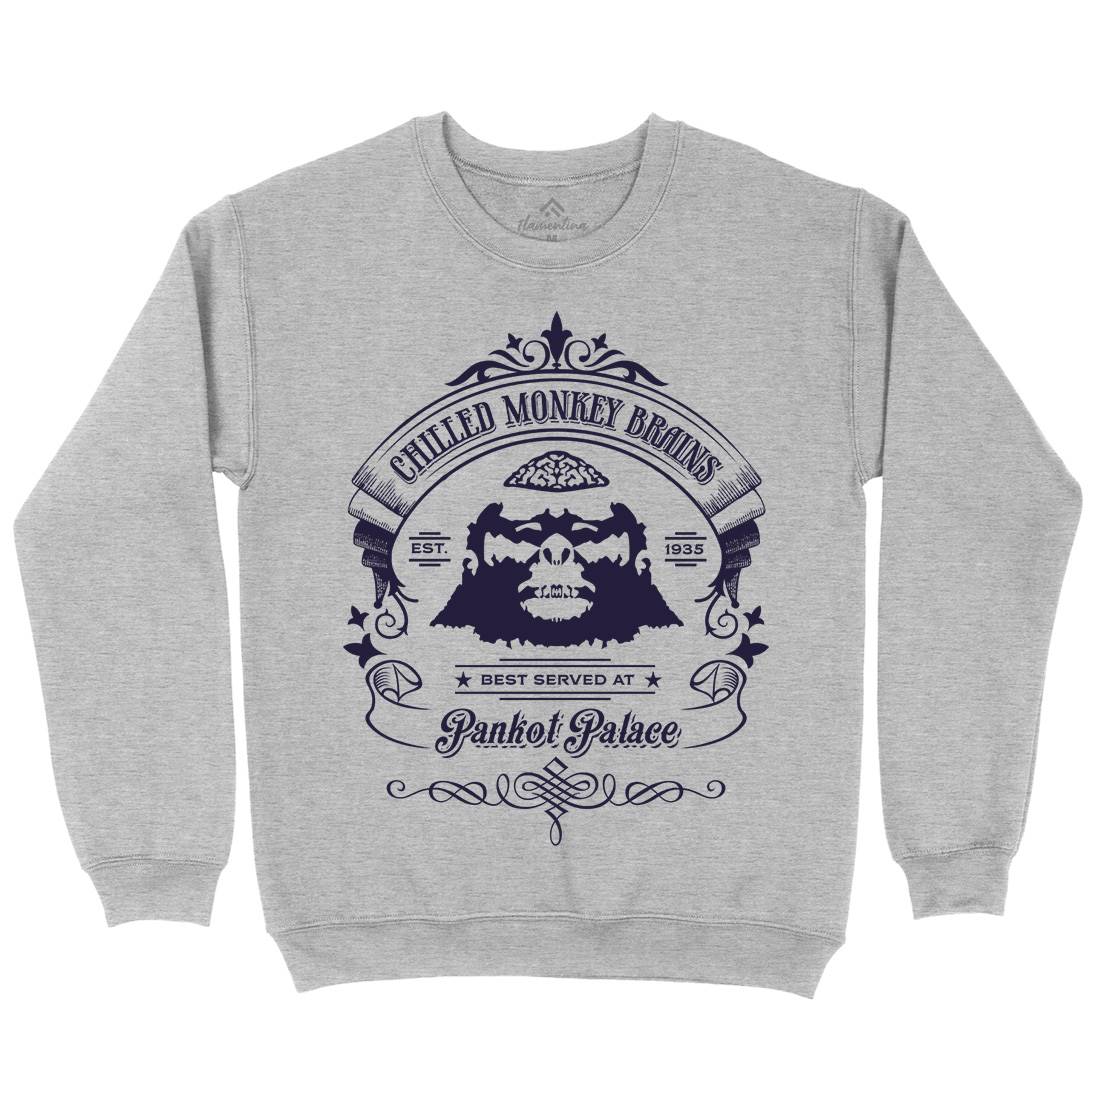 Chilled Monkey Brains Kids Crew Neck Sweatshirt Food D239